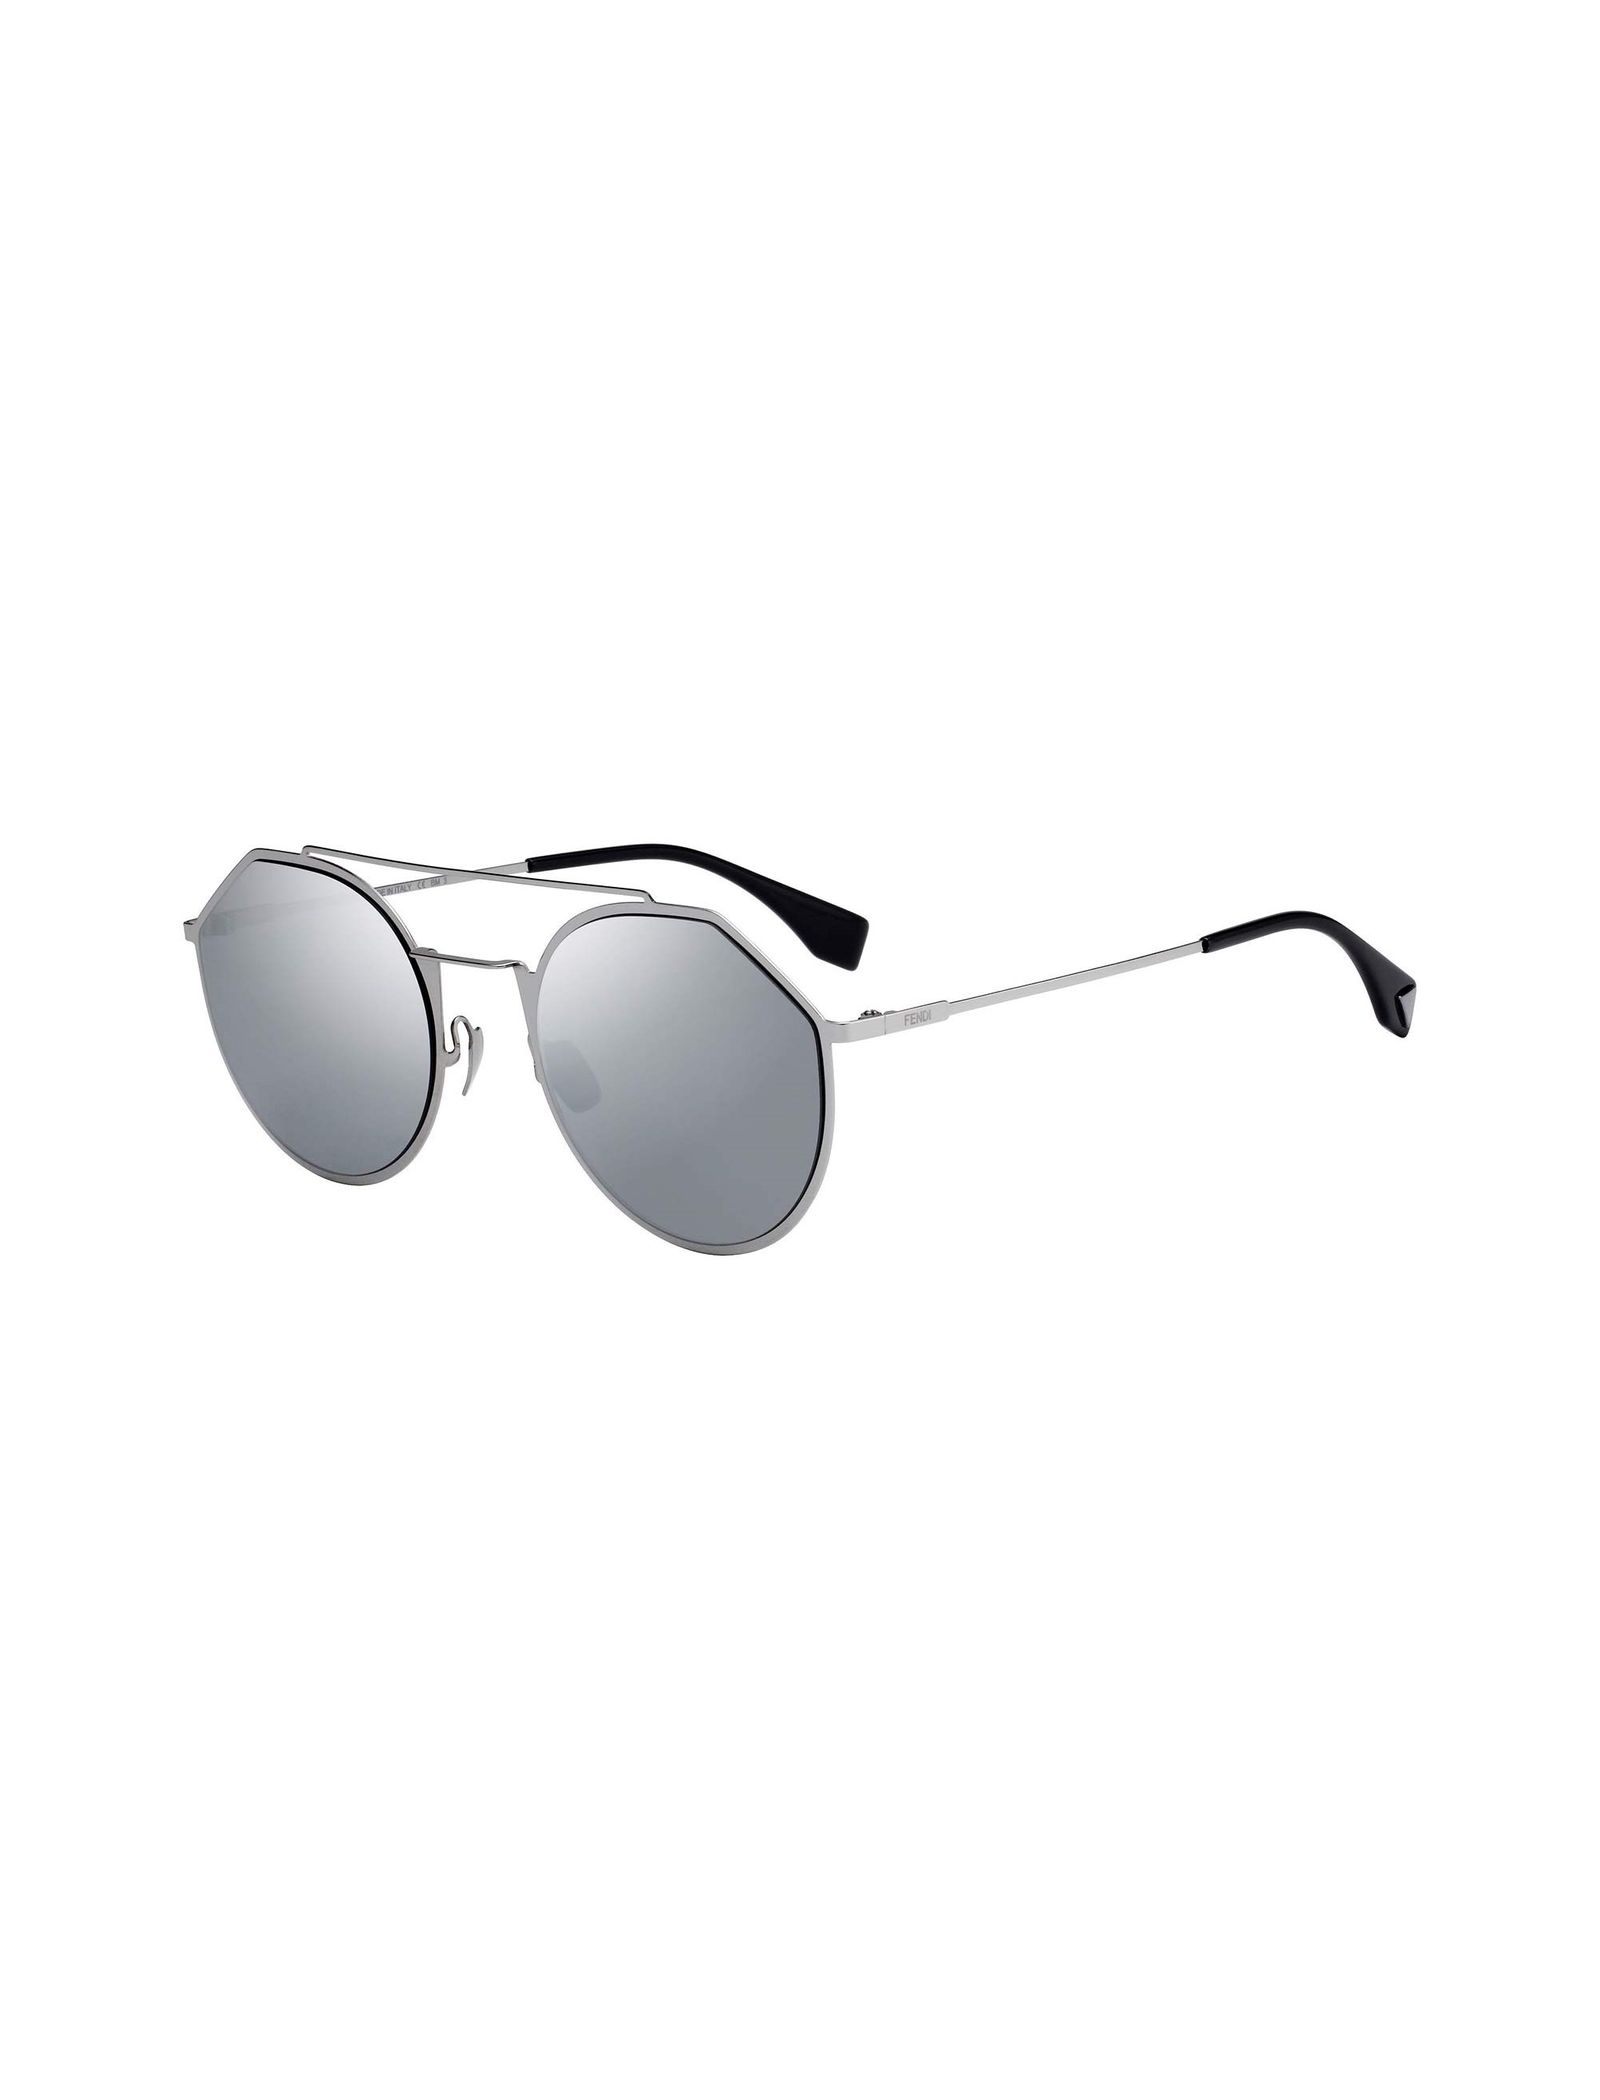 عینک آفتابی خلبانی مردانه - فندی - نقره اي - 2